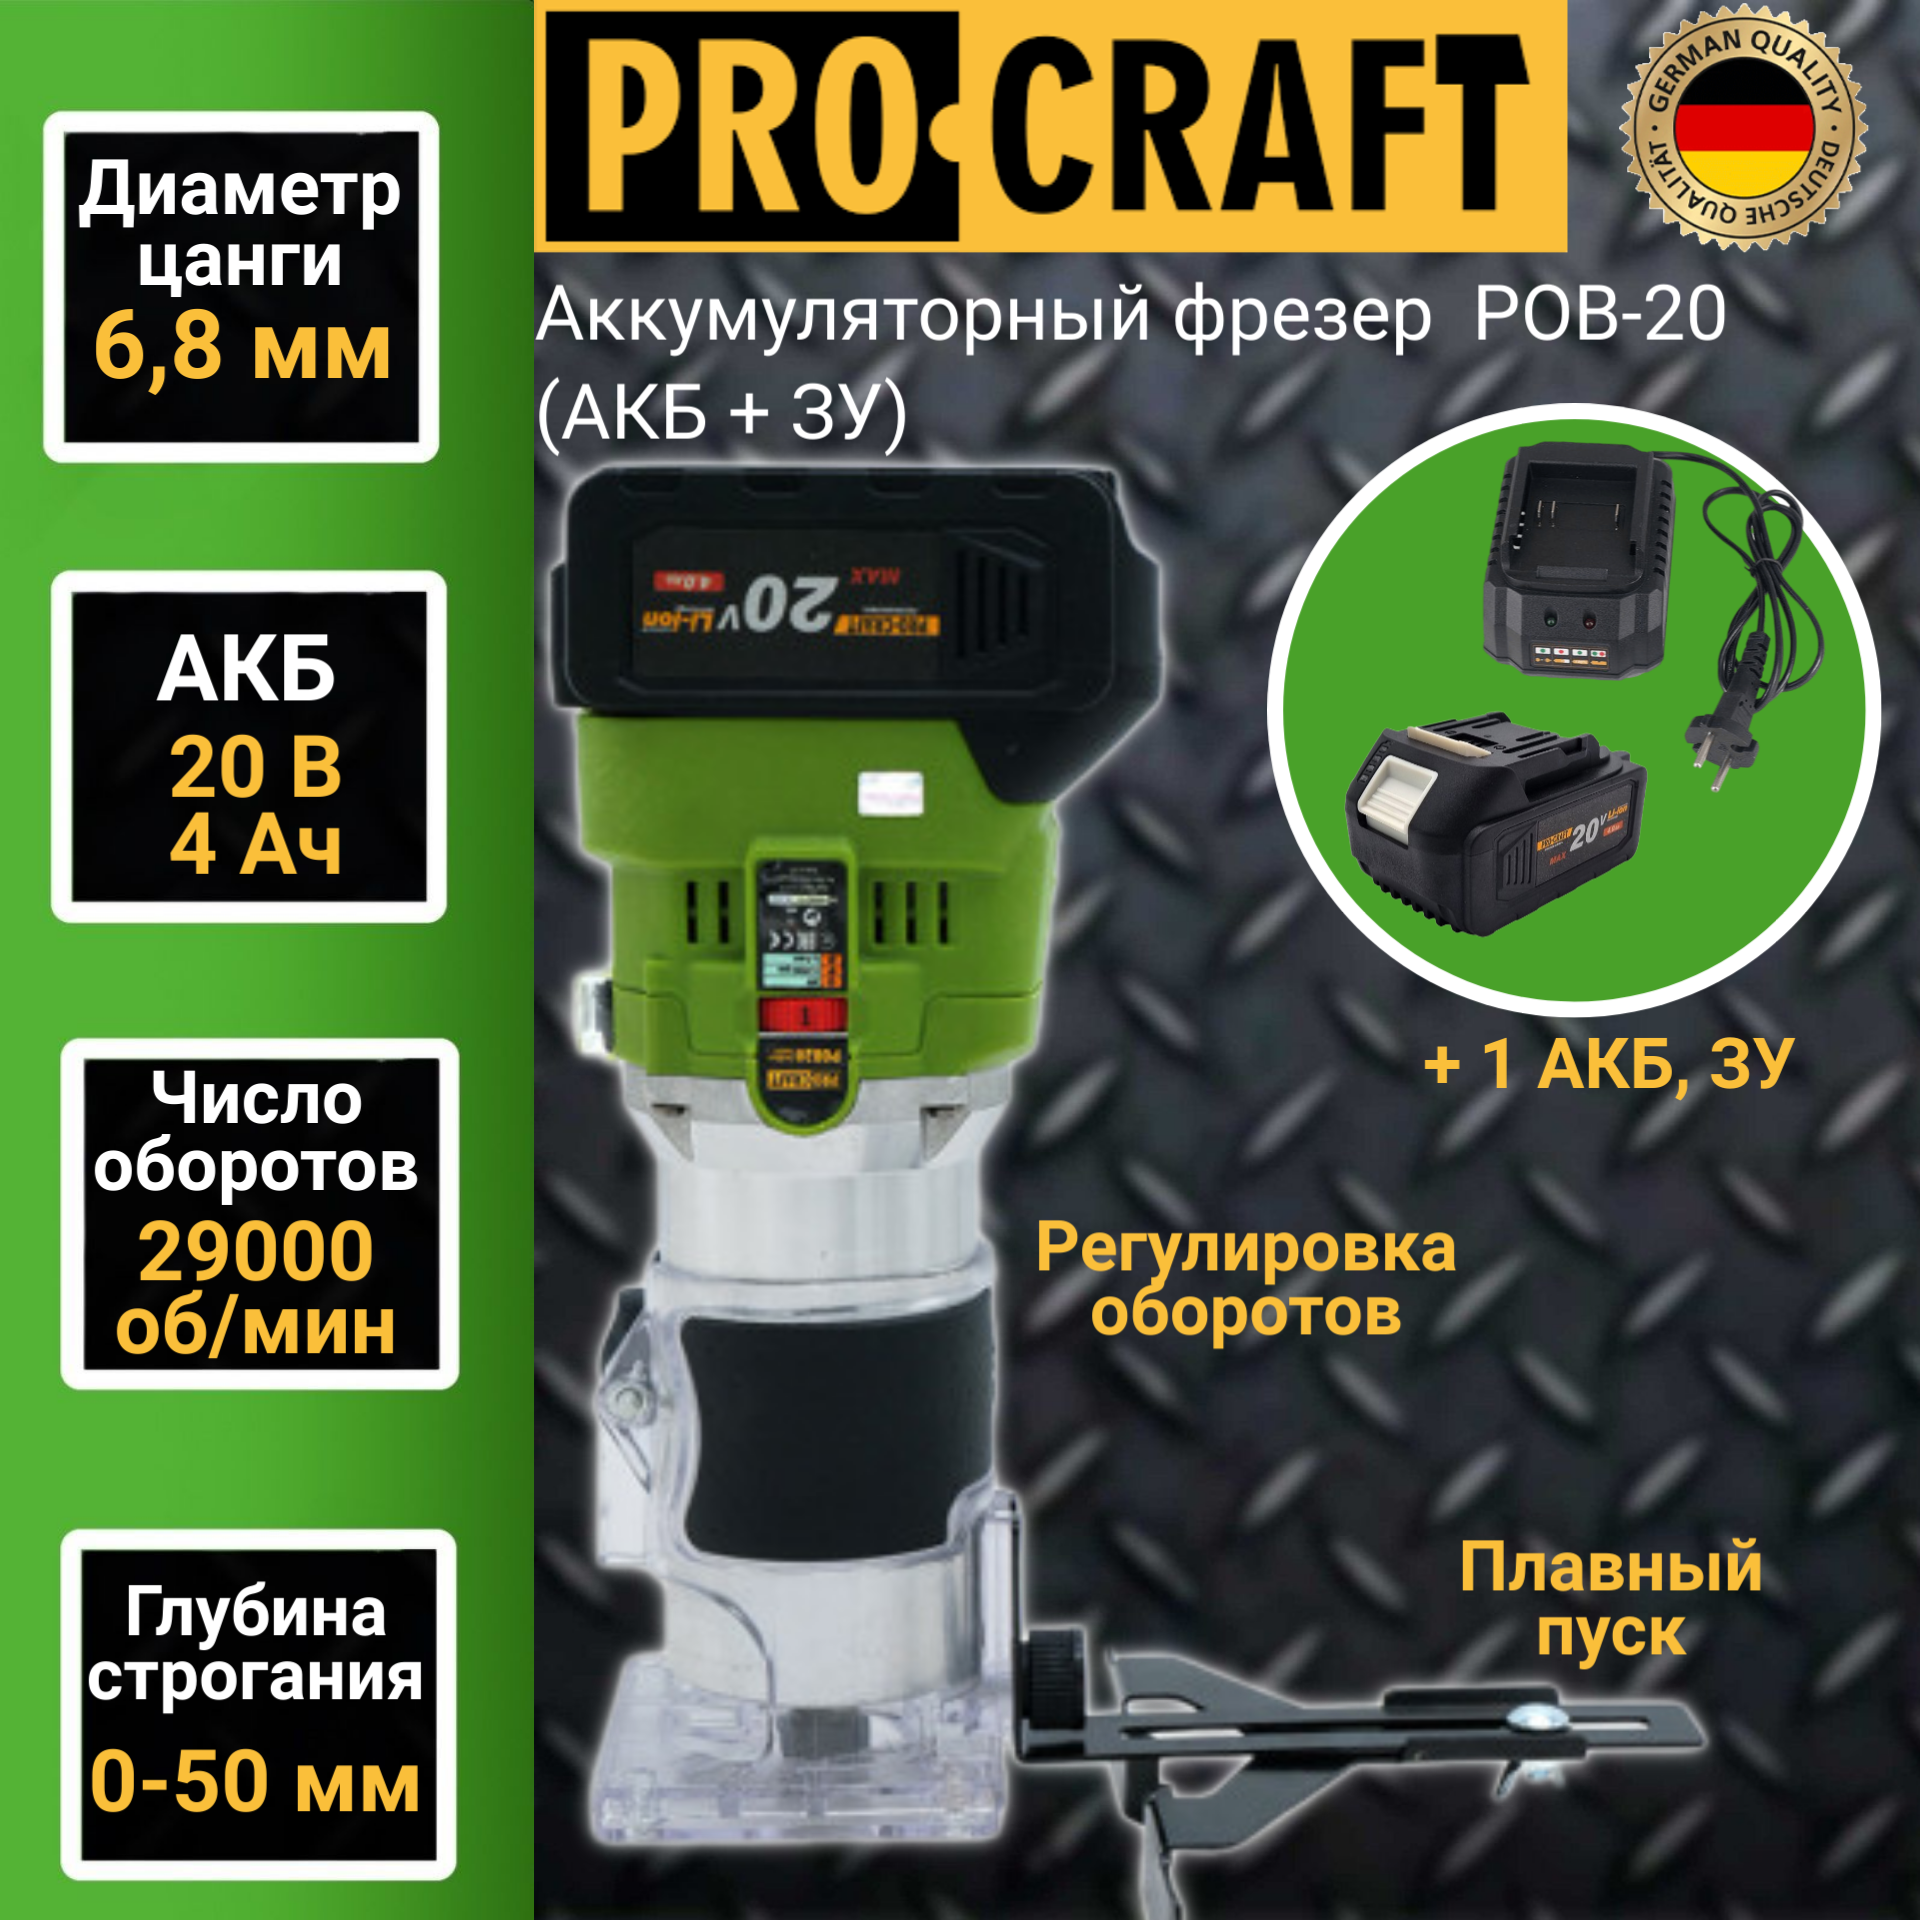 Фрезер аккумуляторный Procraft POB-20 (АКБ+ЗУ), цанга 6/8мм, 29,000об/мин